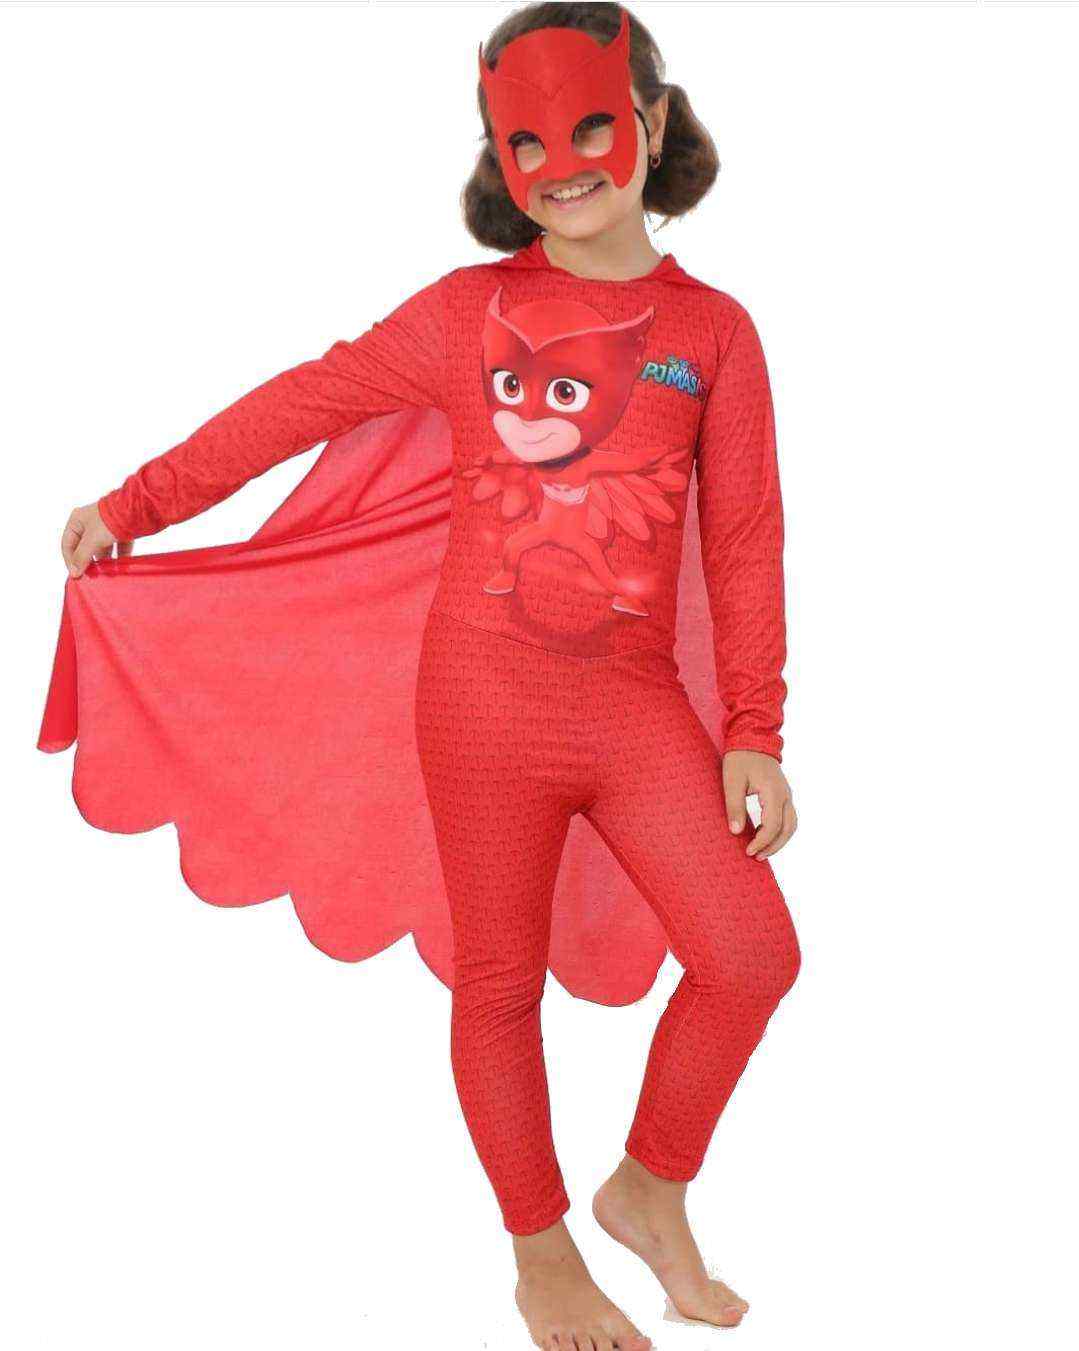 Pijamaskeli Baykuş Kız Amaya Kostümü